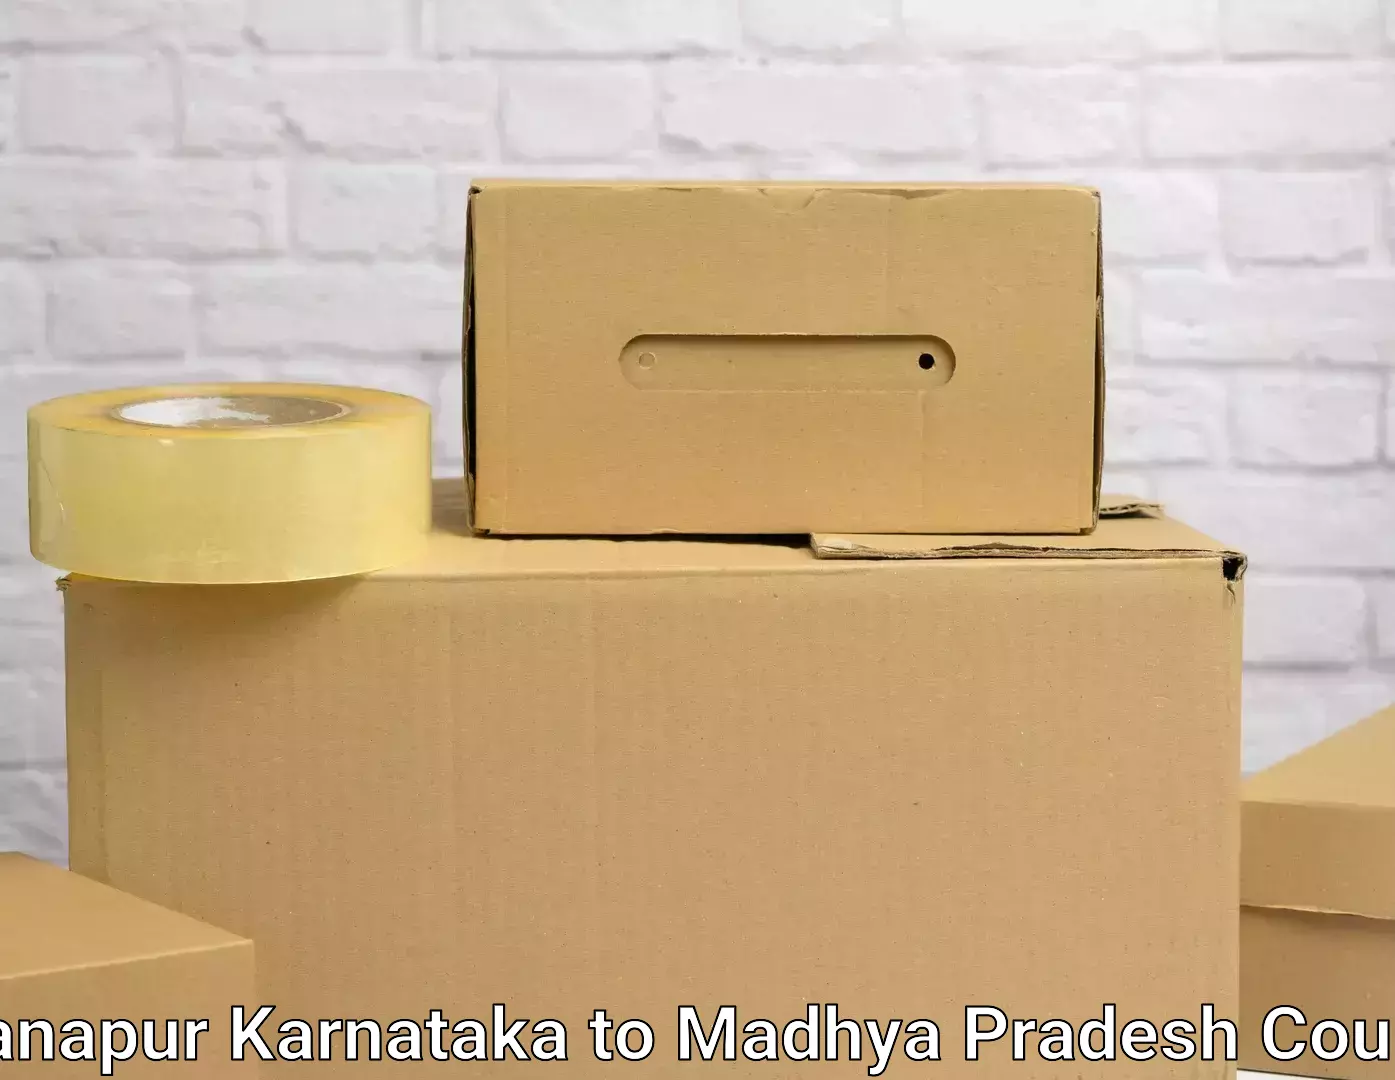 Household goods transport service Khanapur Karnataka to Binaganj